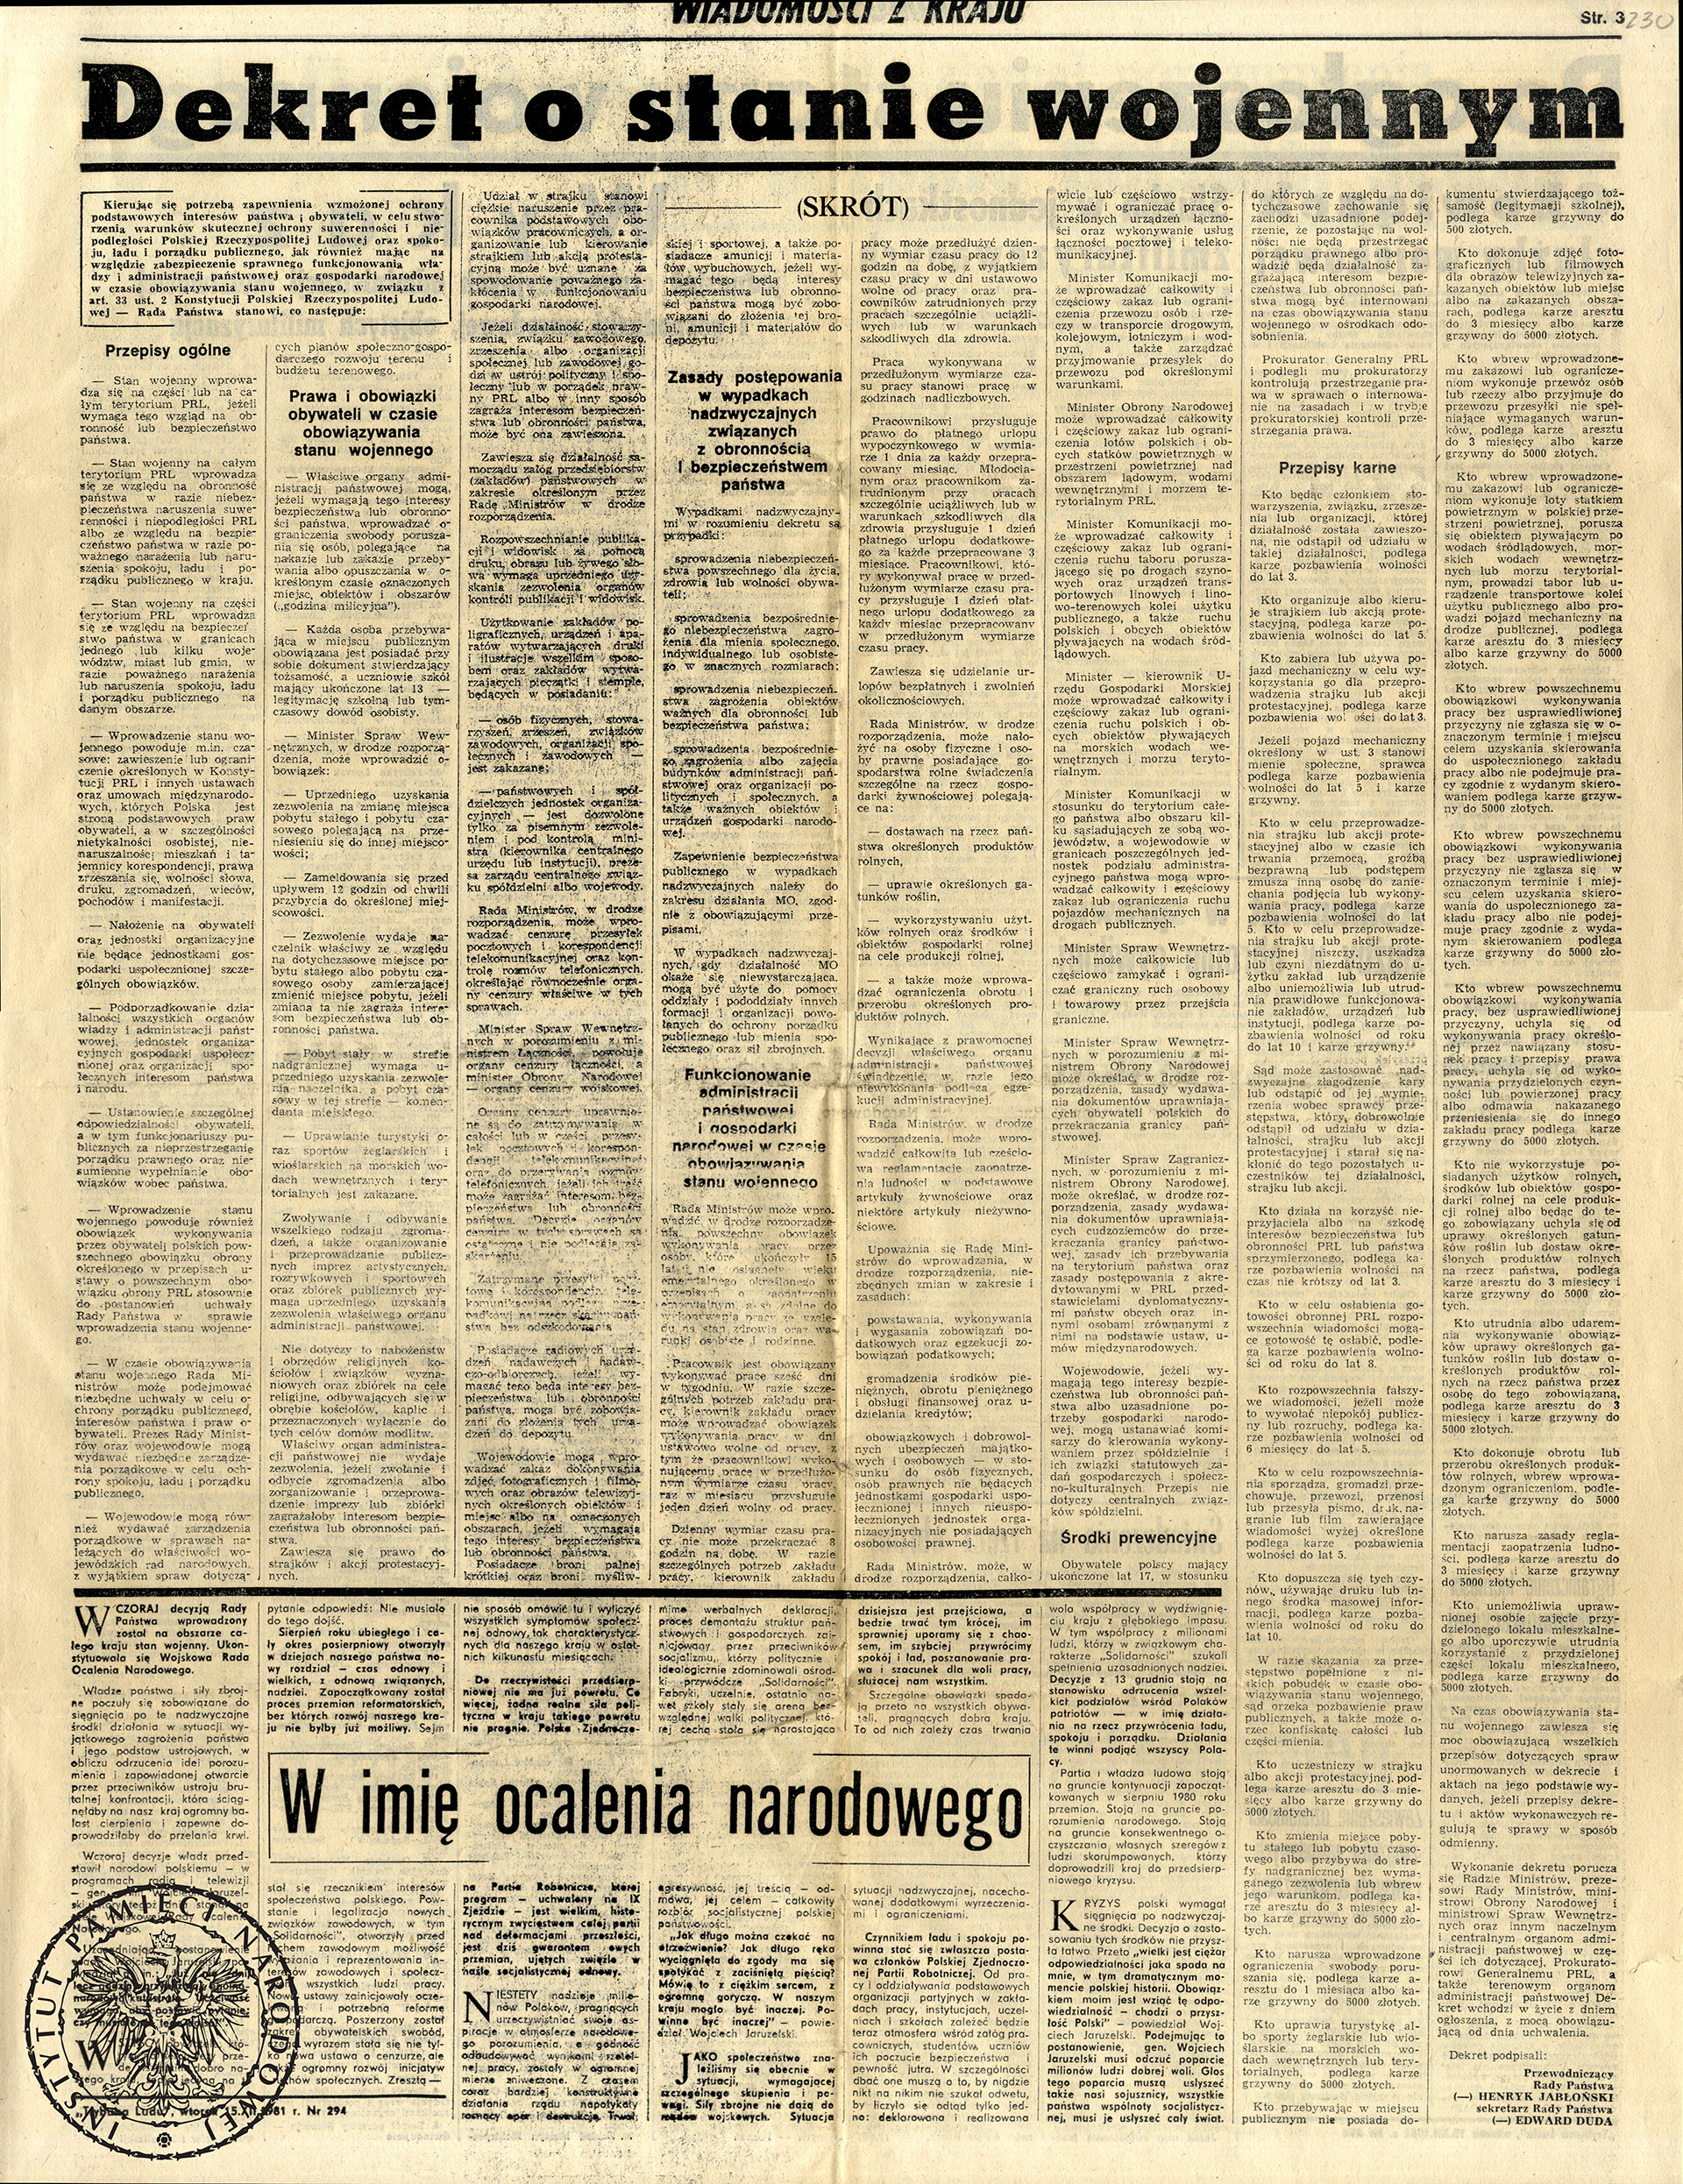 Dziennik „Trybuna Ludu” 13 grudnia 1981 roku